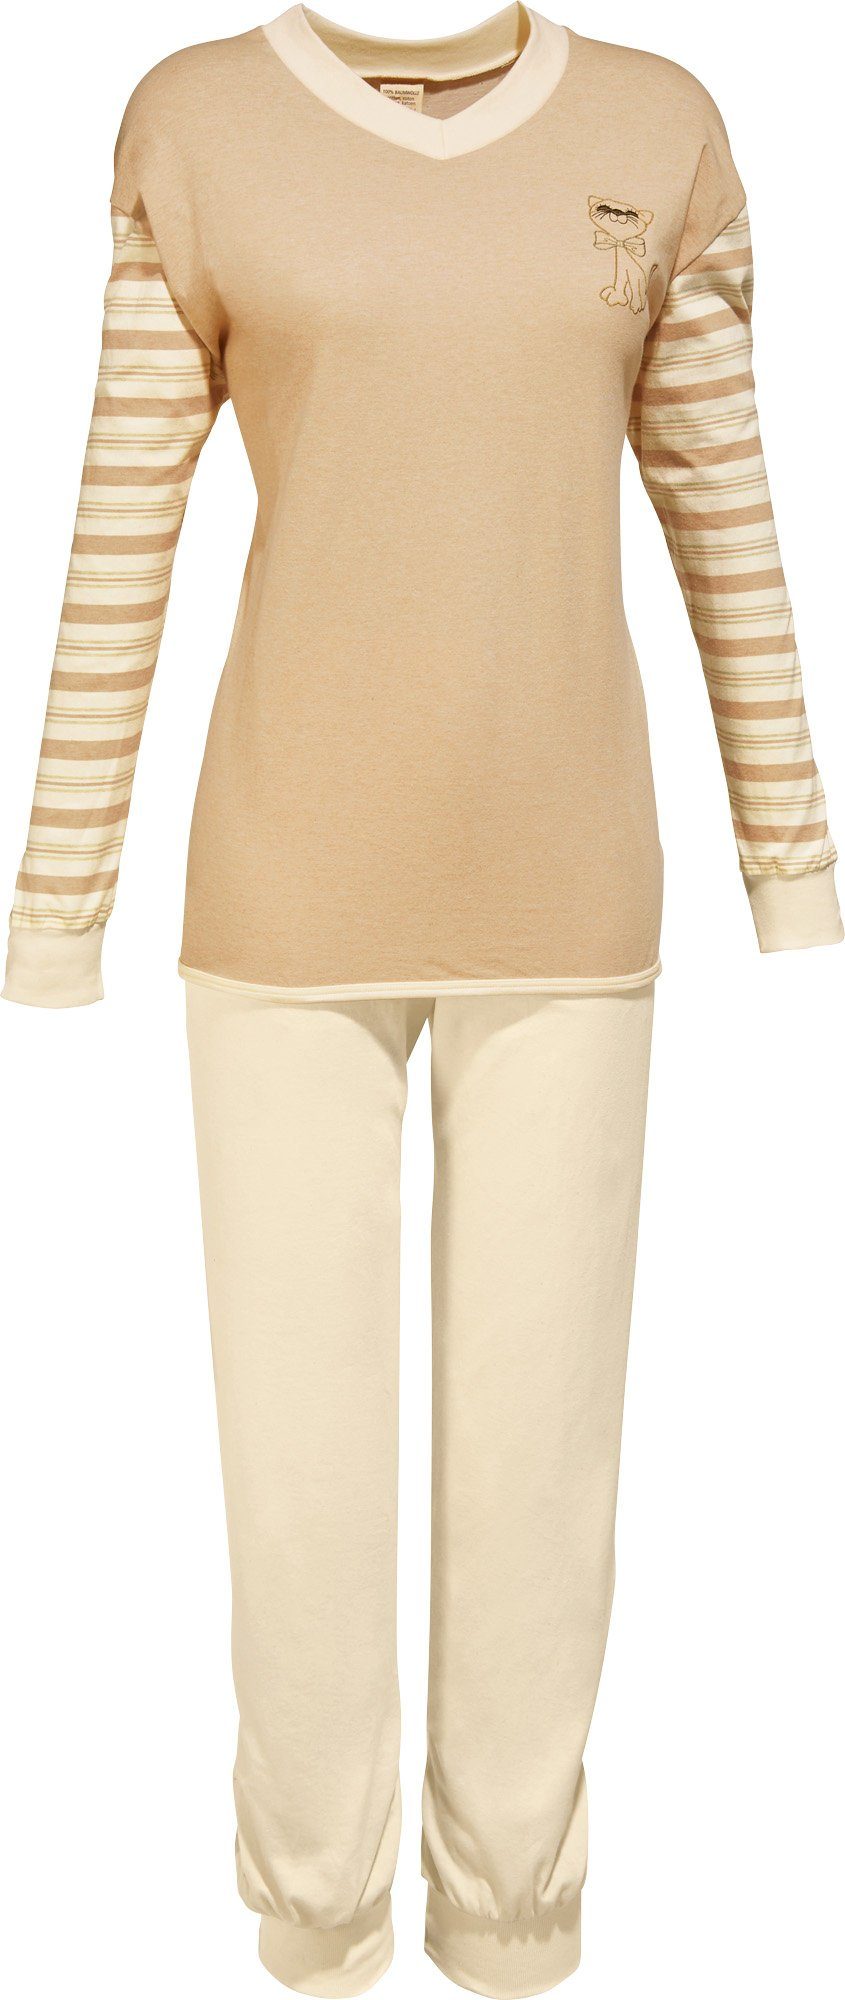 götting Pyjama Damen-Schlafanzug naturbelassen Single-Jersey Streifen